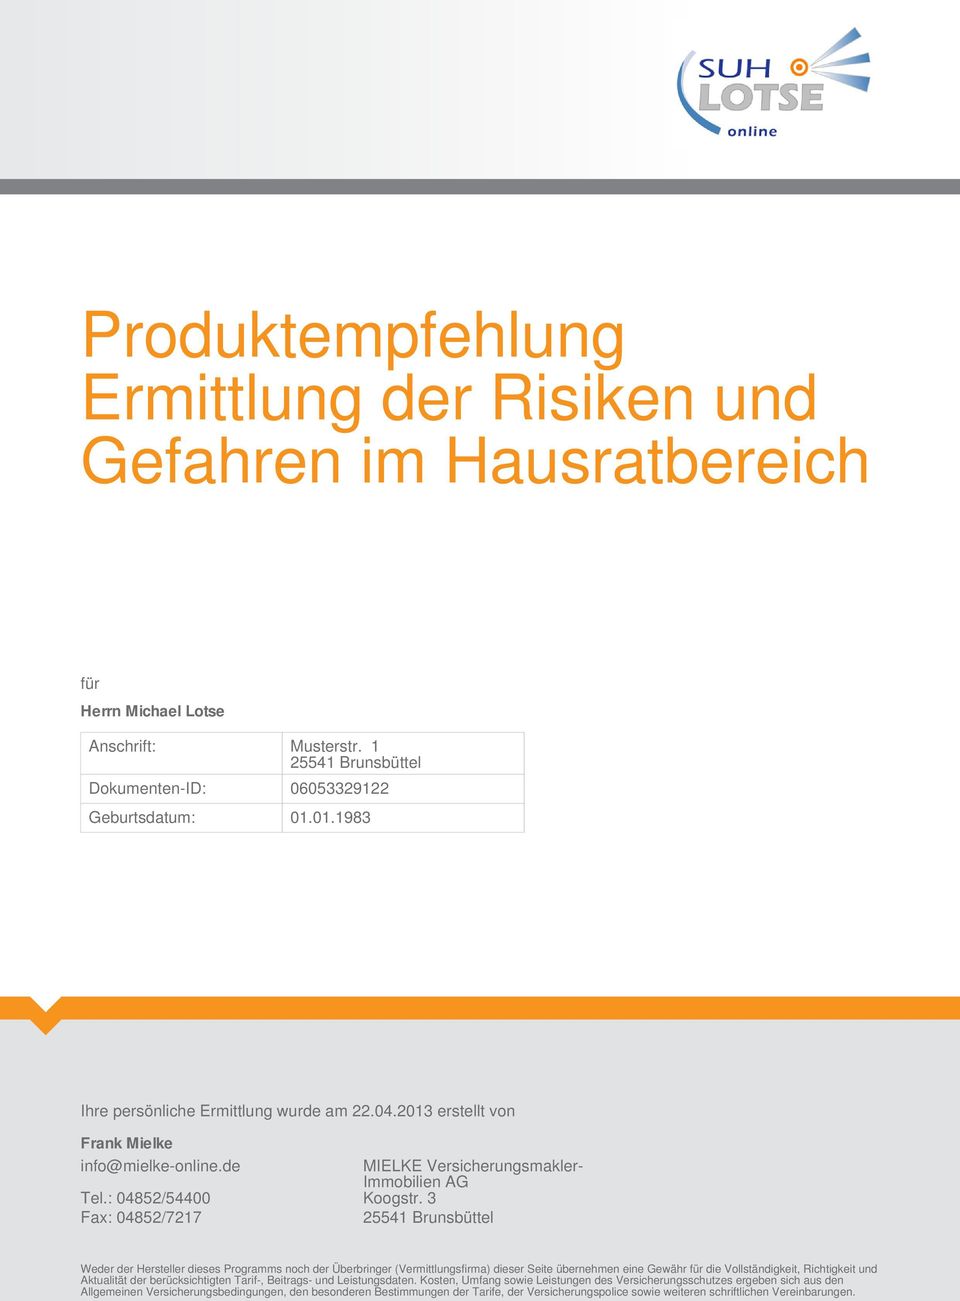 3 Fax: 04852/7217 25541 Brunsbüttel Weder der Hersteller dieses Programms noch der Überbringer (Vermittlungsfirma) dieser Seite übernehmen eine Gewähr für die Vollständigkeit, Richtigkeit und